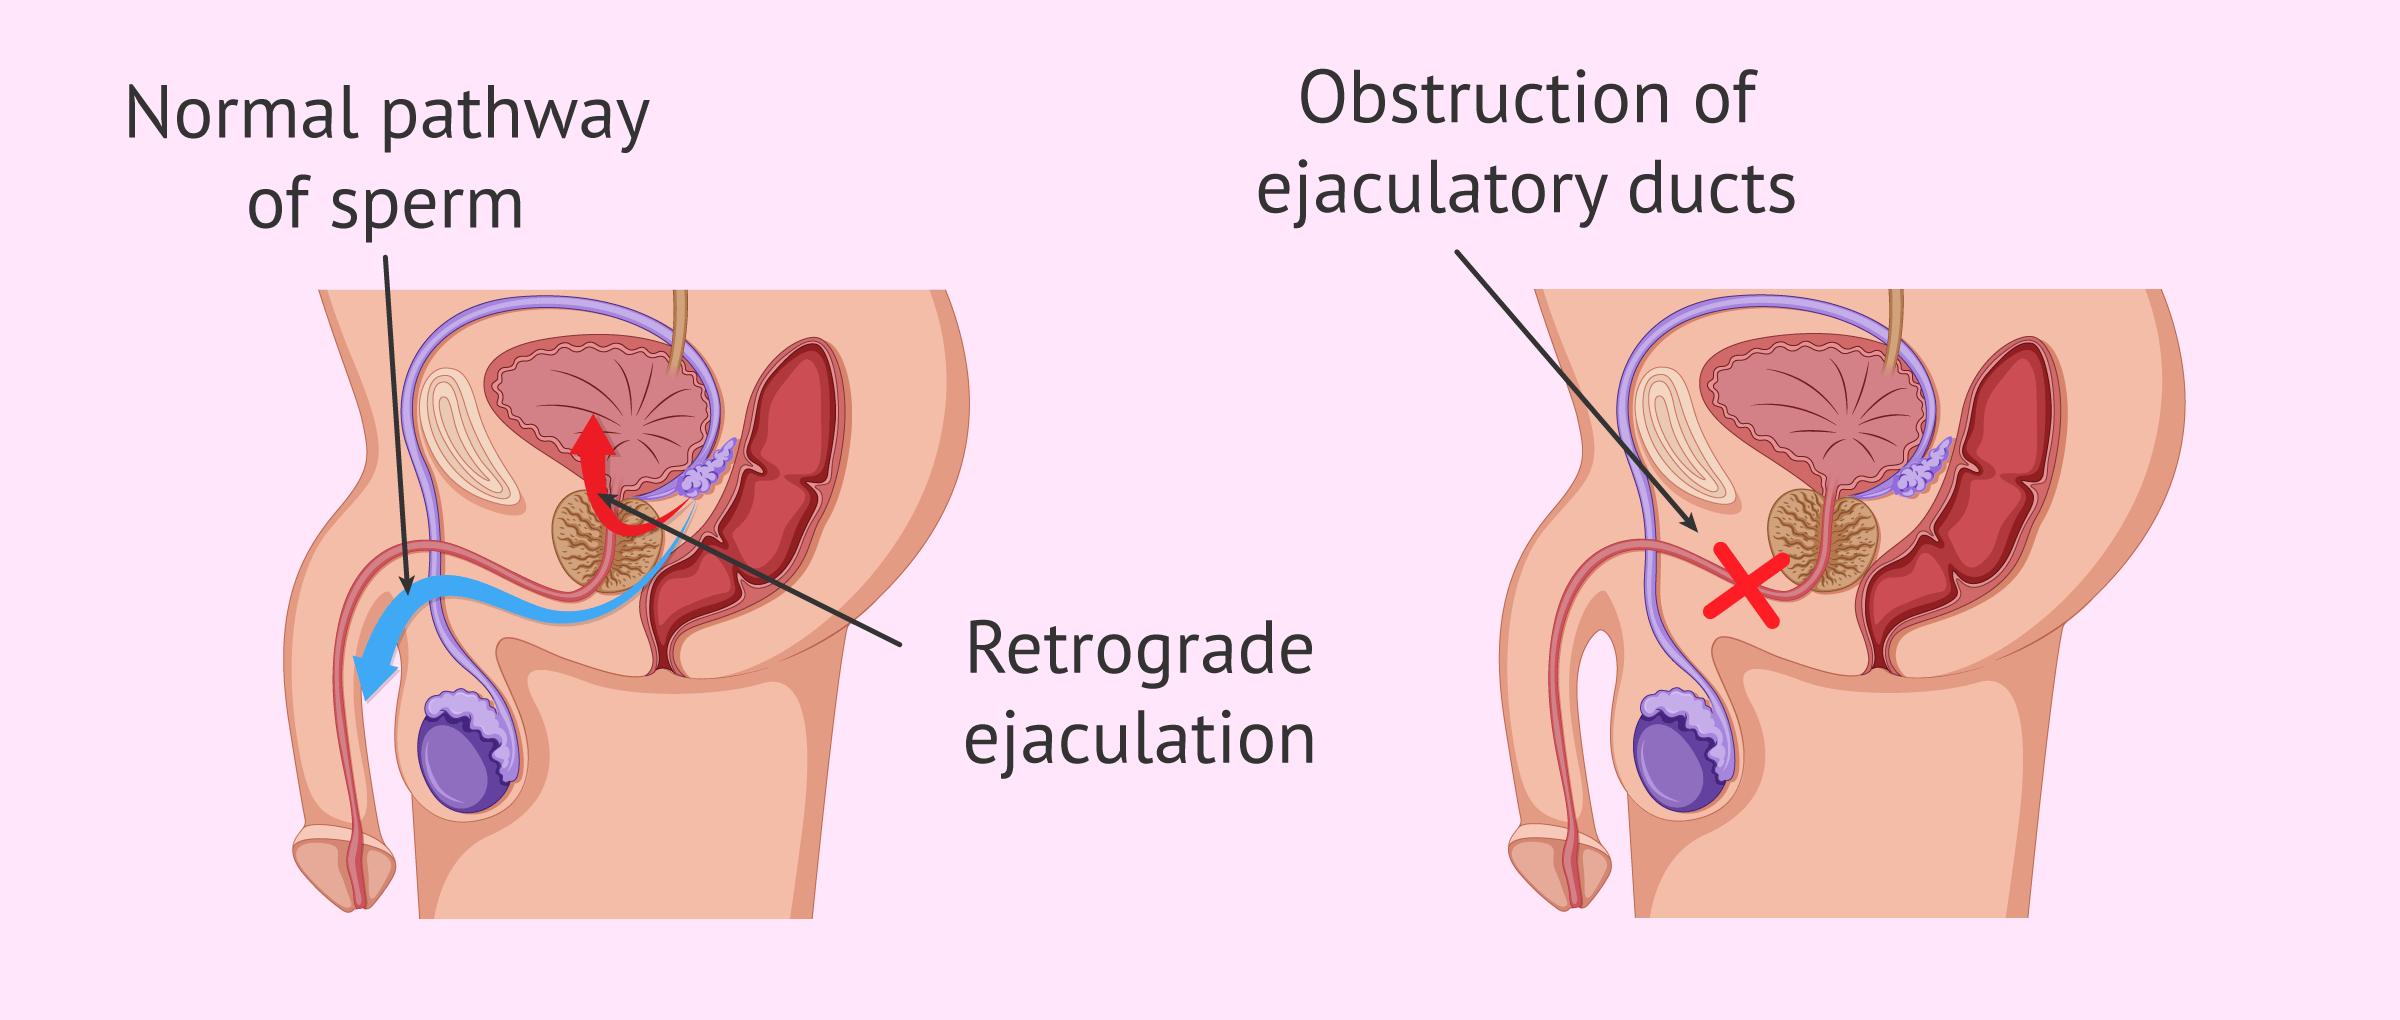 Masturbation Without Ejaculation